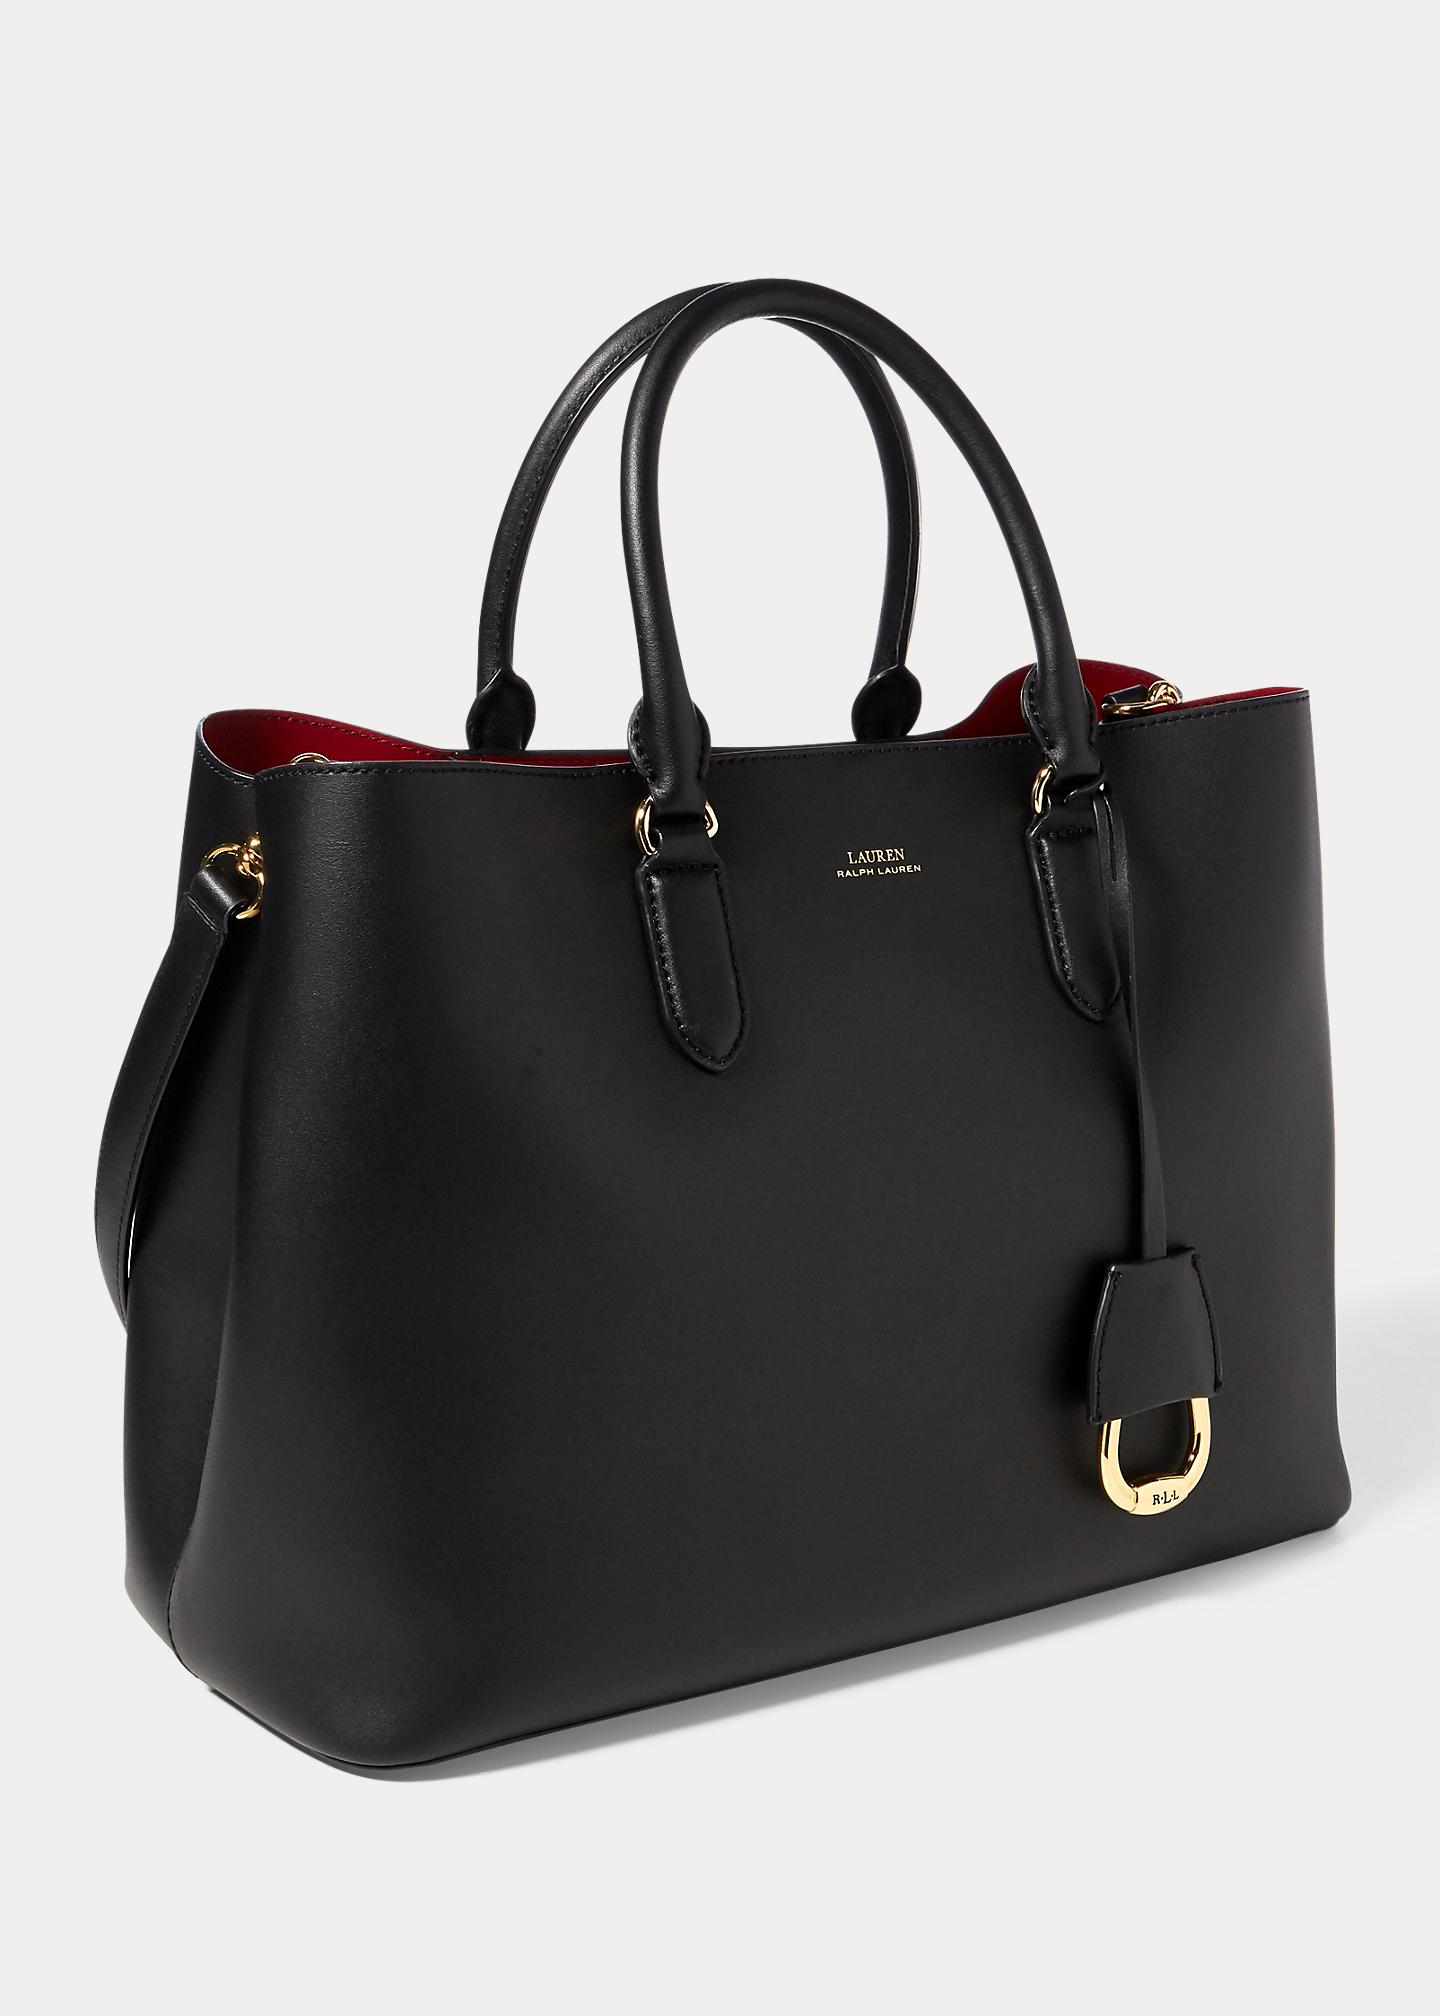 Ralph Lauren Lauren Dryden Marcy Leather Satchel Bag in Black/Red (Black) |  Lyst UK